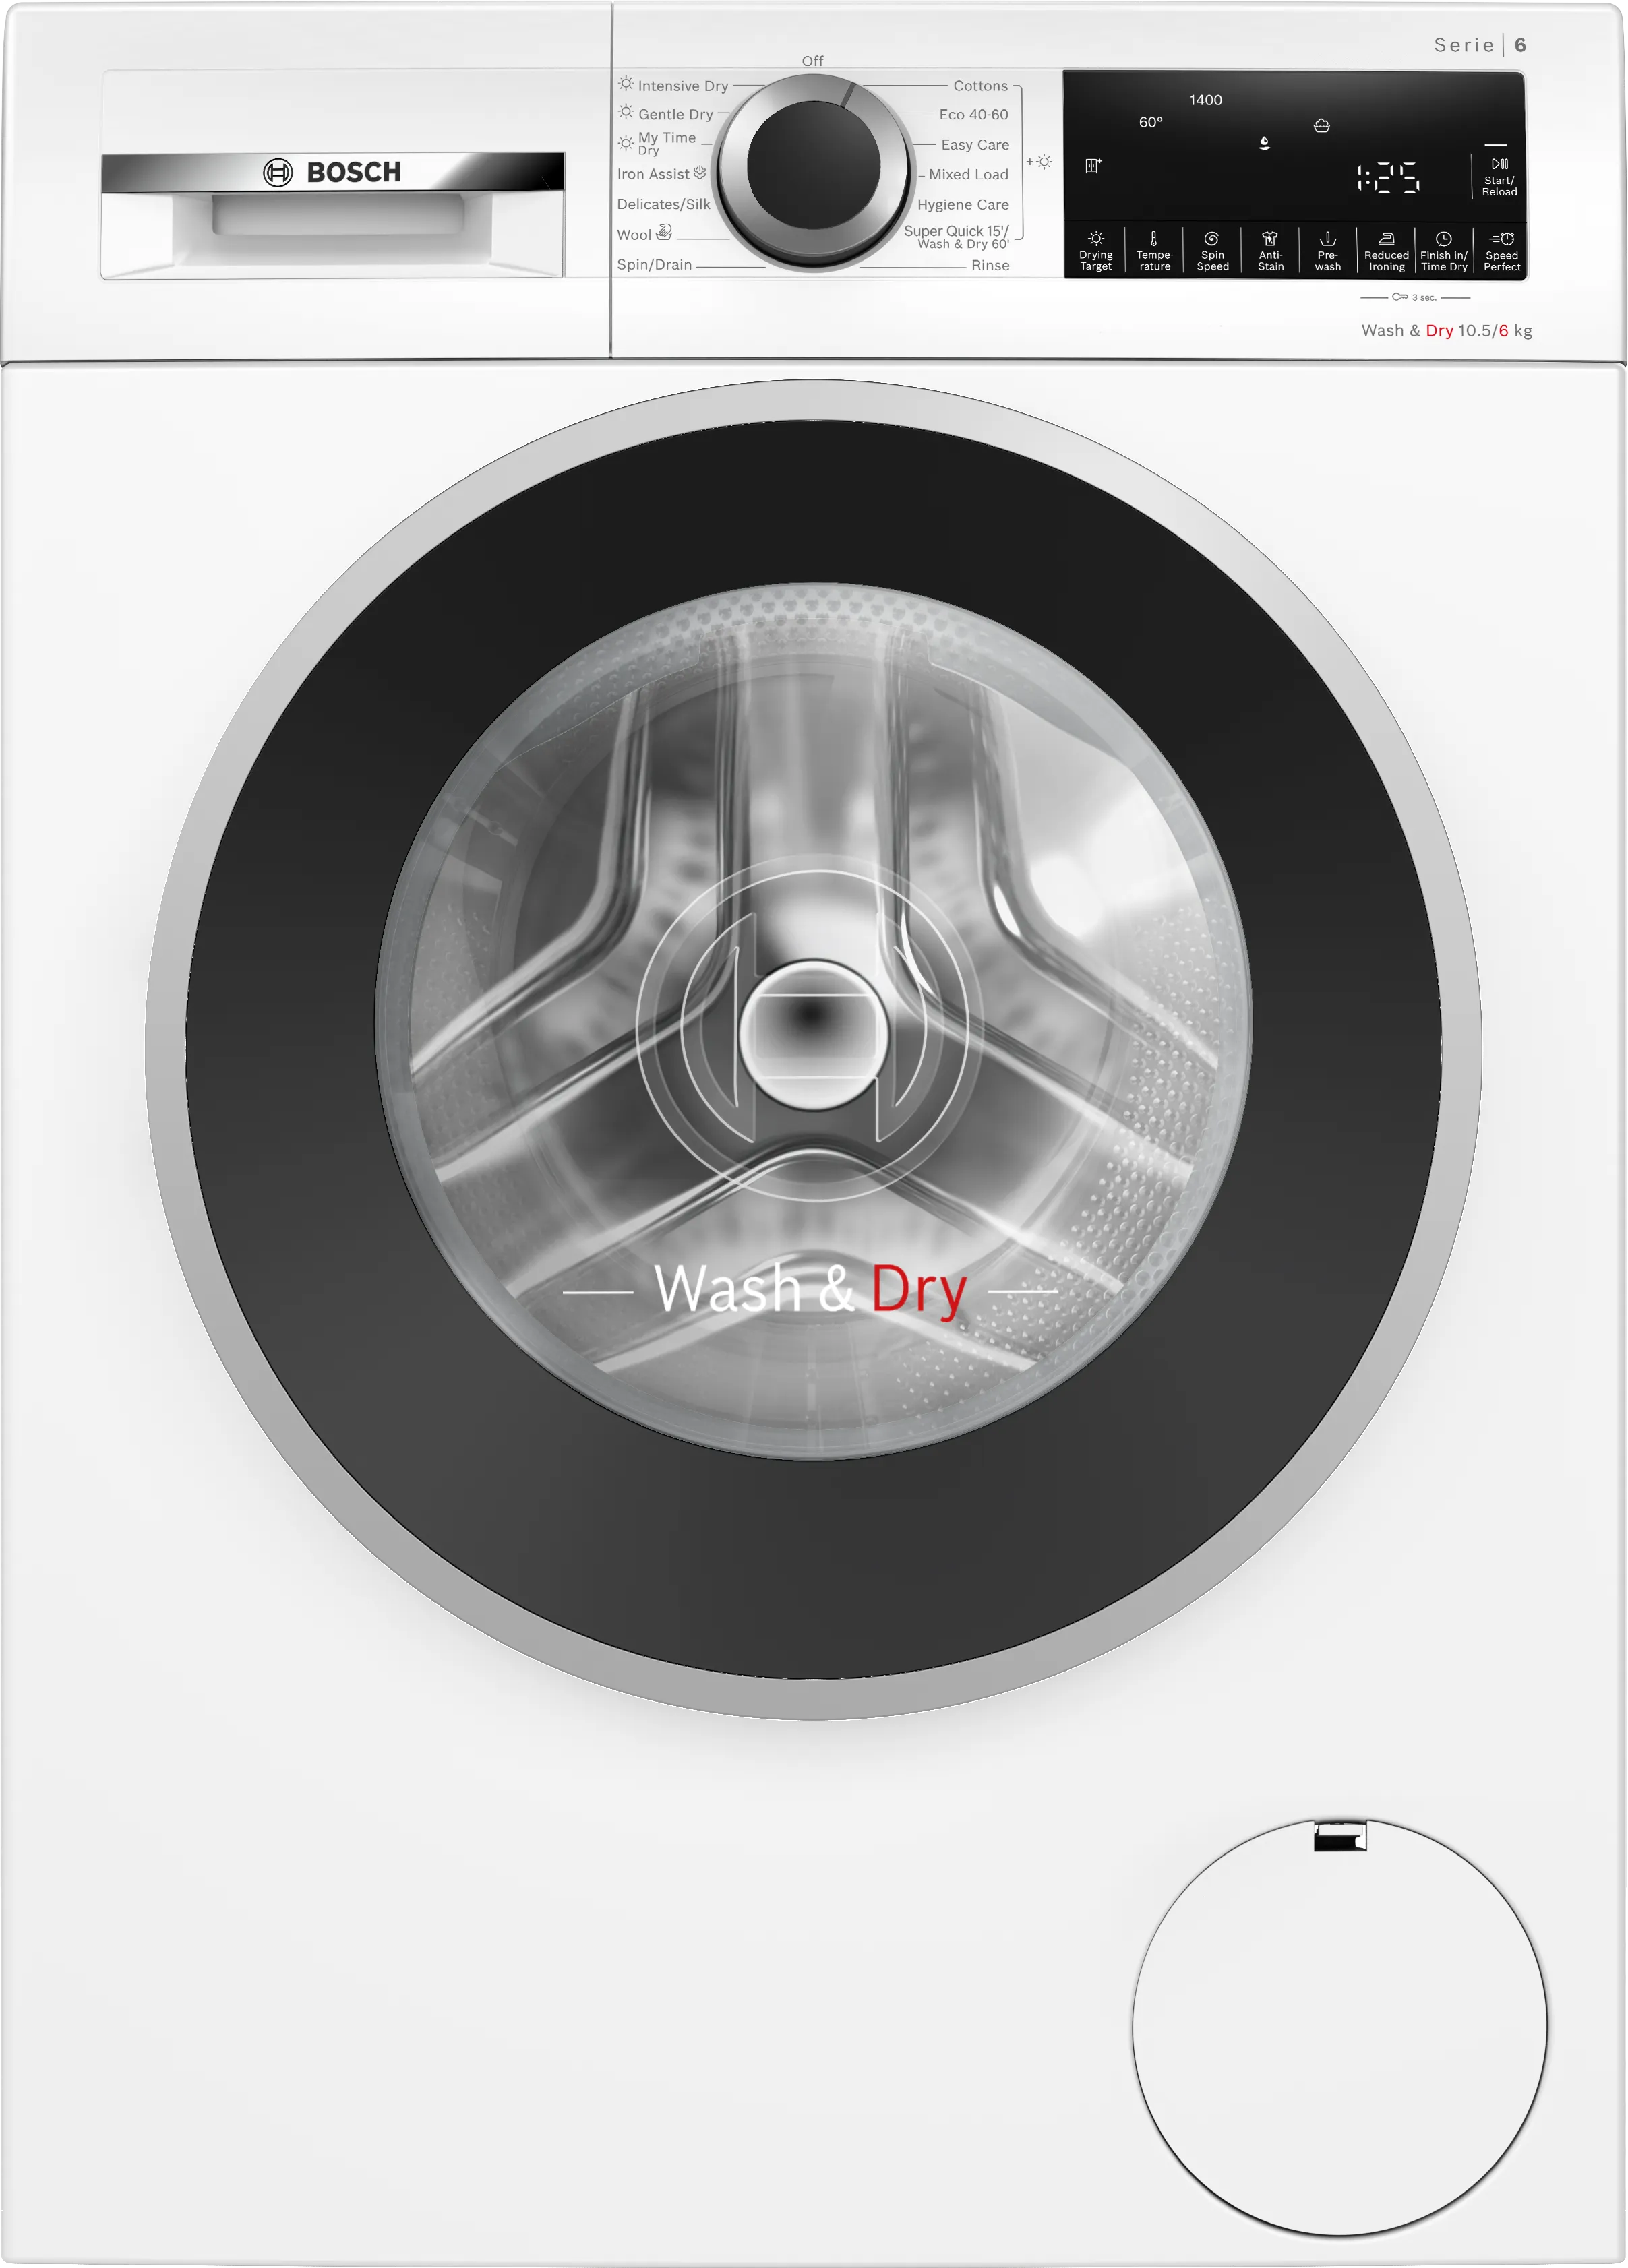 Series 6 Washer dryer 10.5/6 kg 1400 rpm 